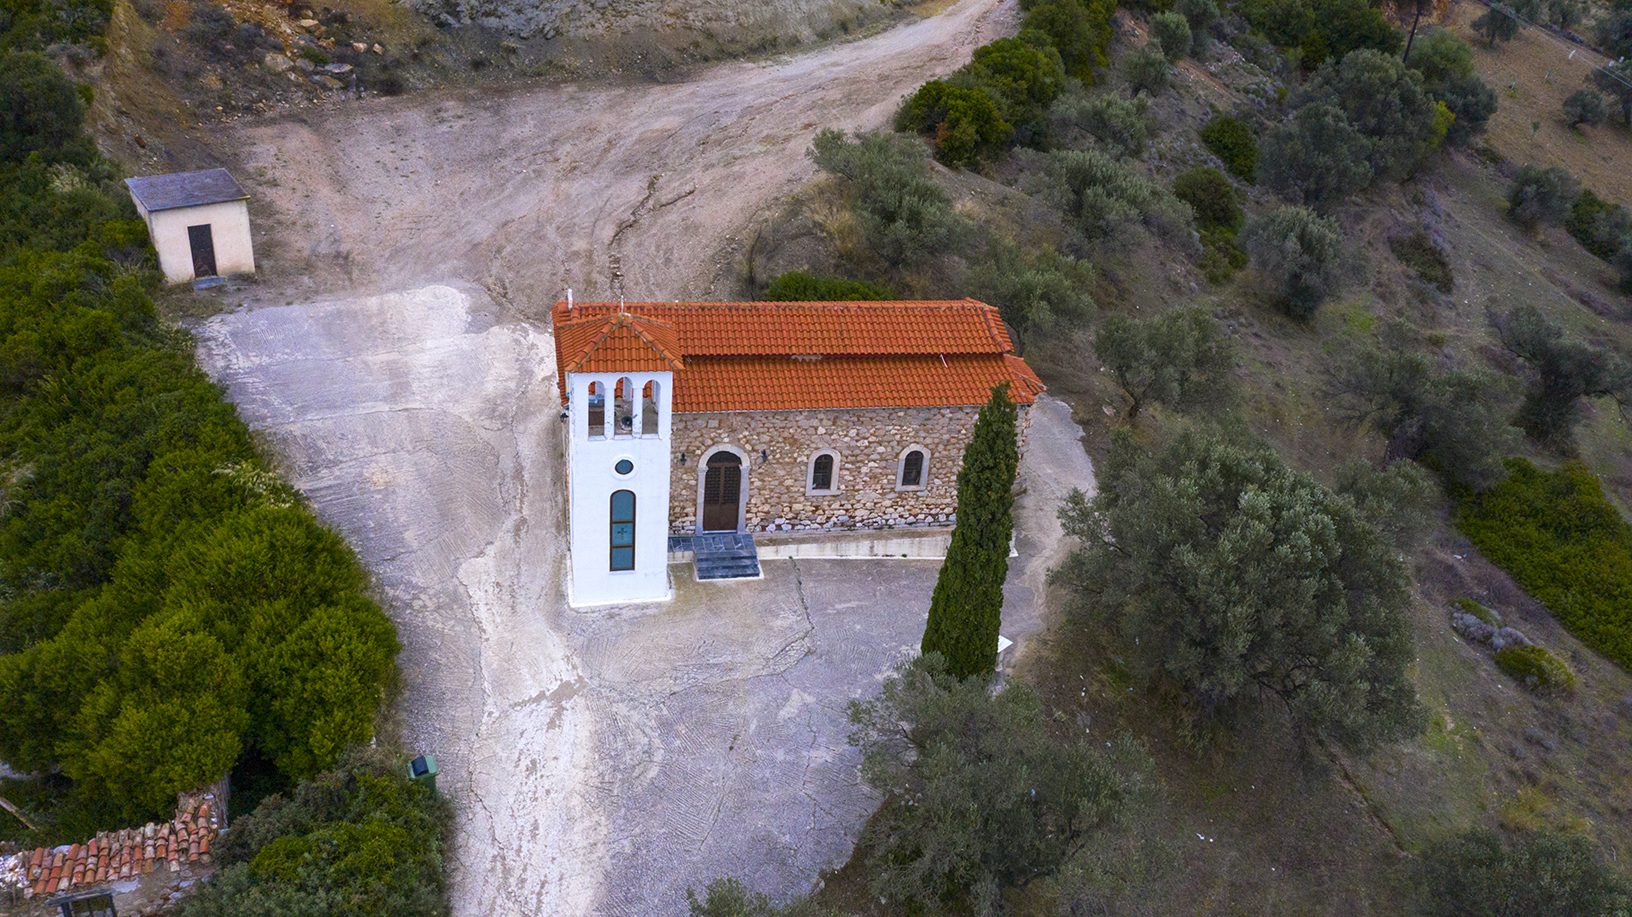 Εκκλησία Άγιος Νικόλαος, οικισμός Λάτας. Φωτογραφία: ©Βασίλης Συκάς, για τον Δήμο Κύμης-Αλιβερίου